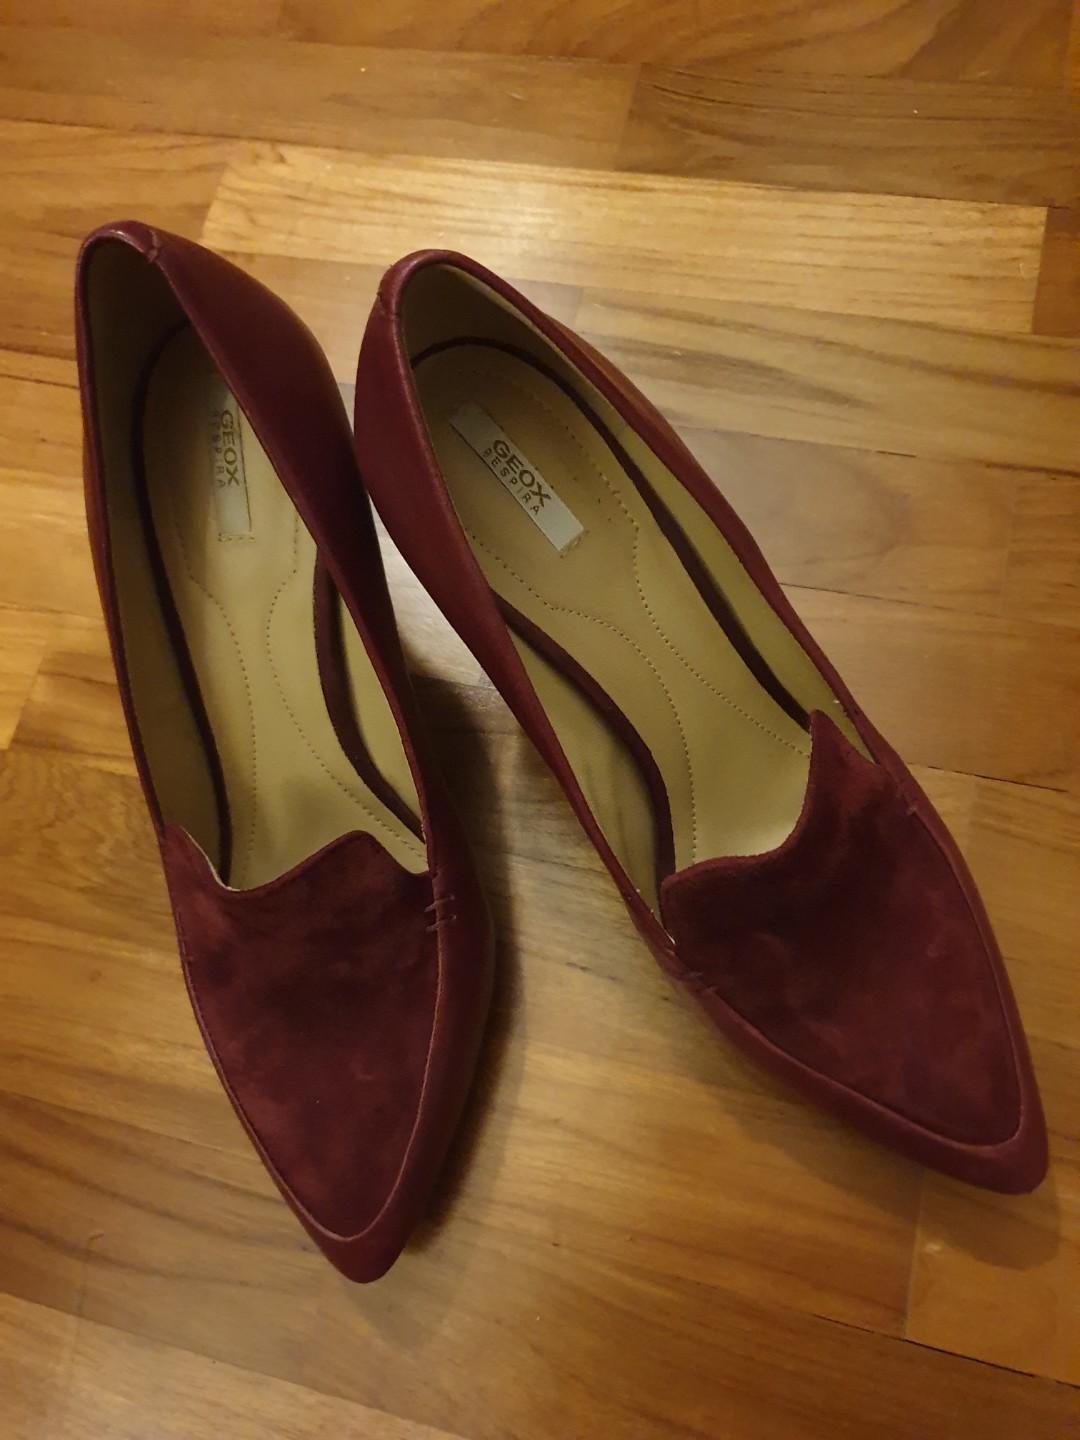 Geox Respira burgundy Italian heels (size 39), Women's Fashion, Footwear, Heels on Carousell